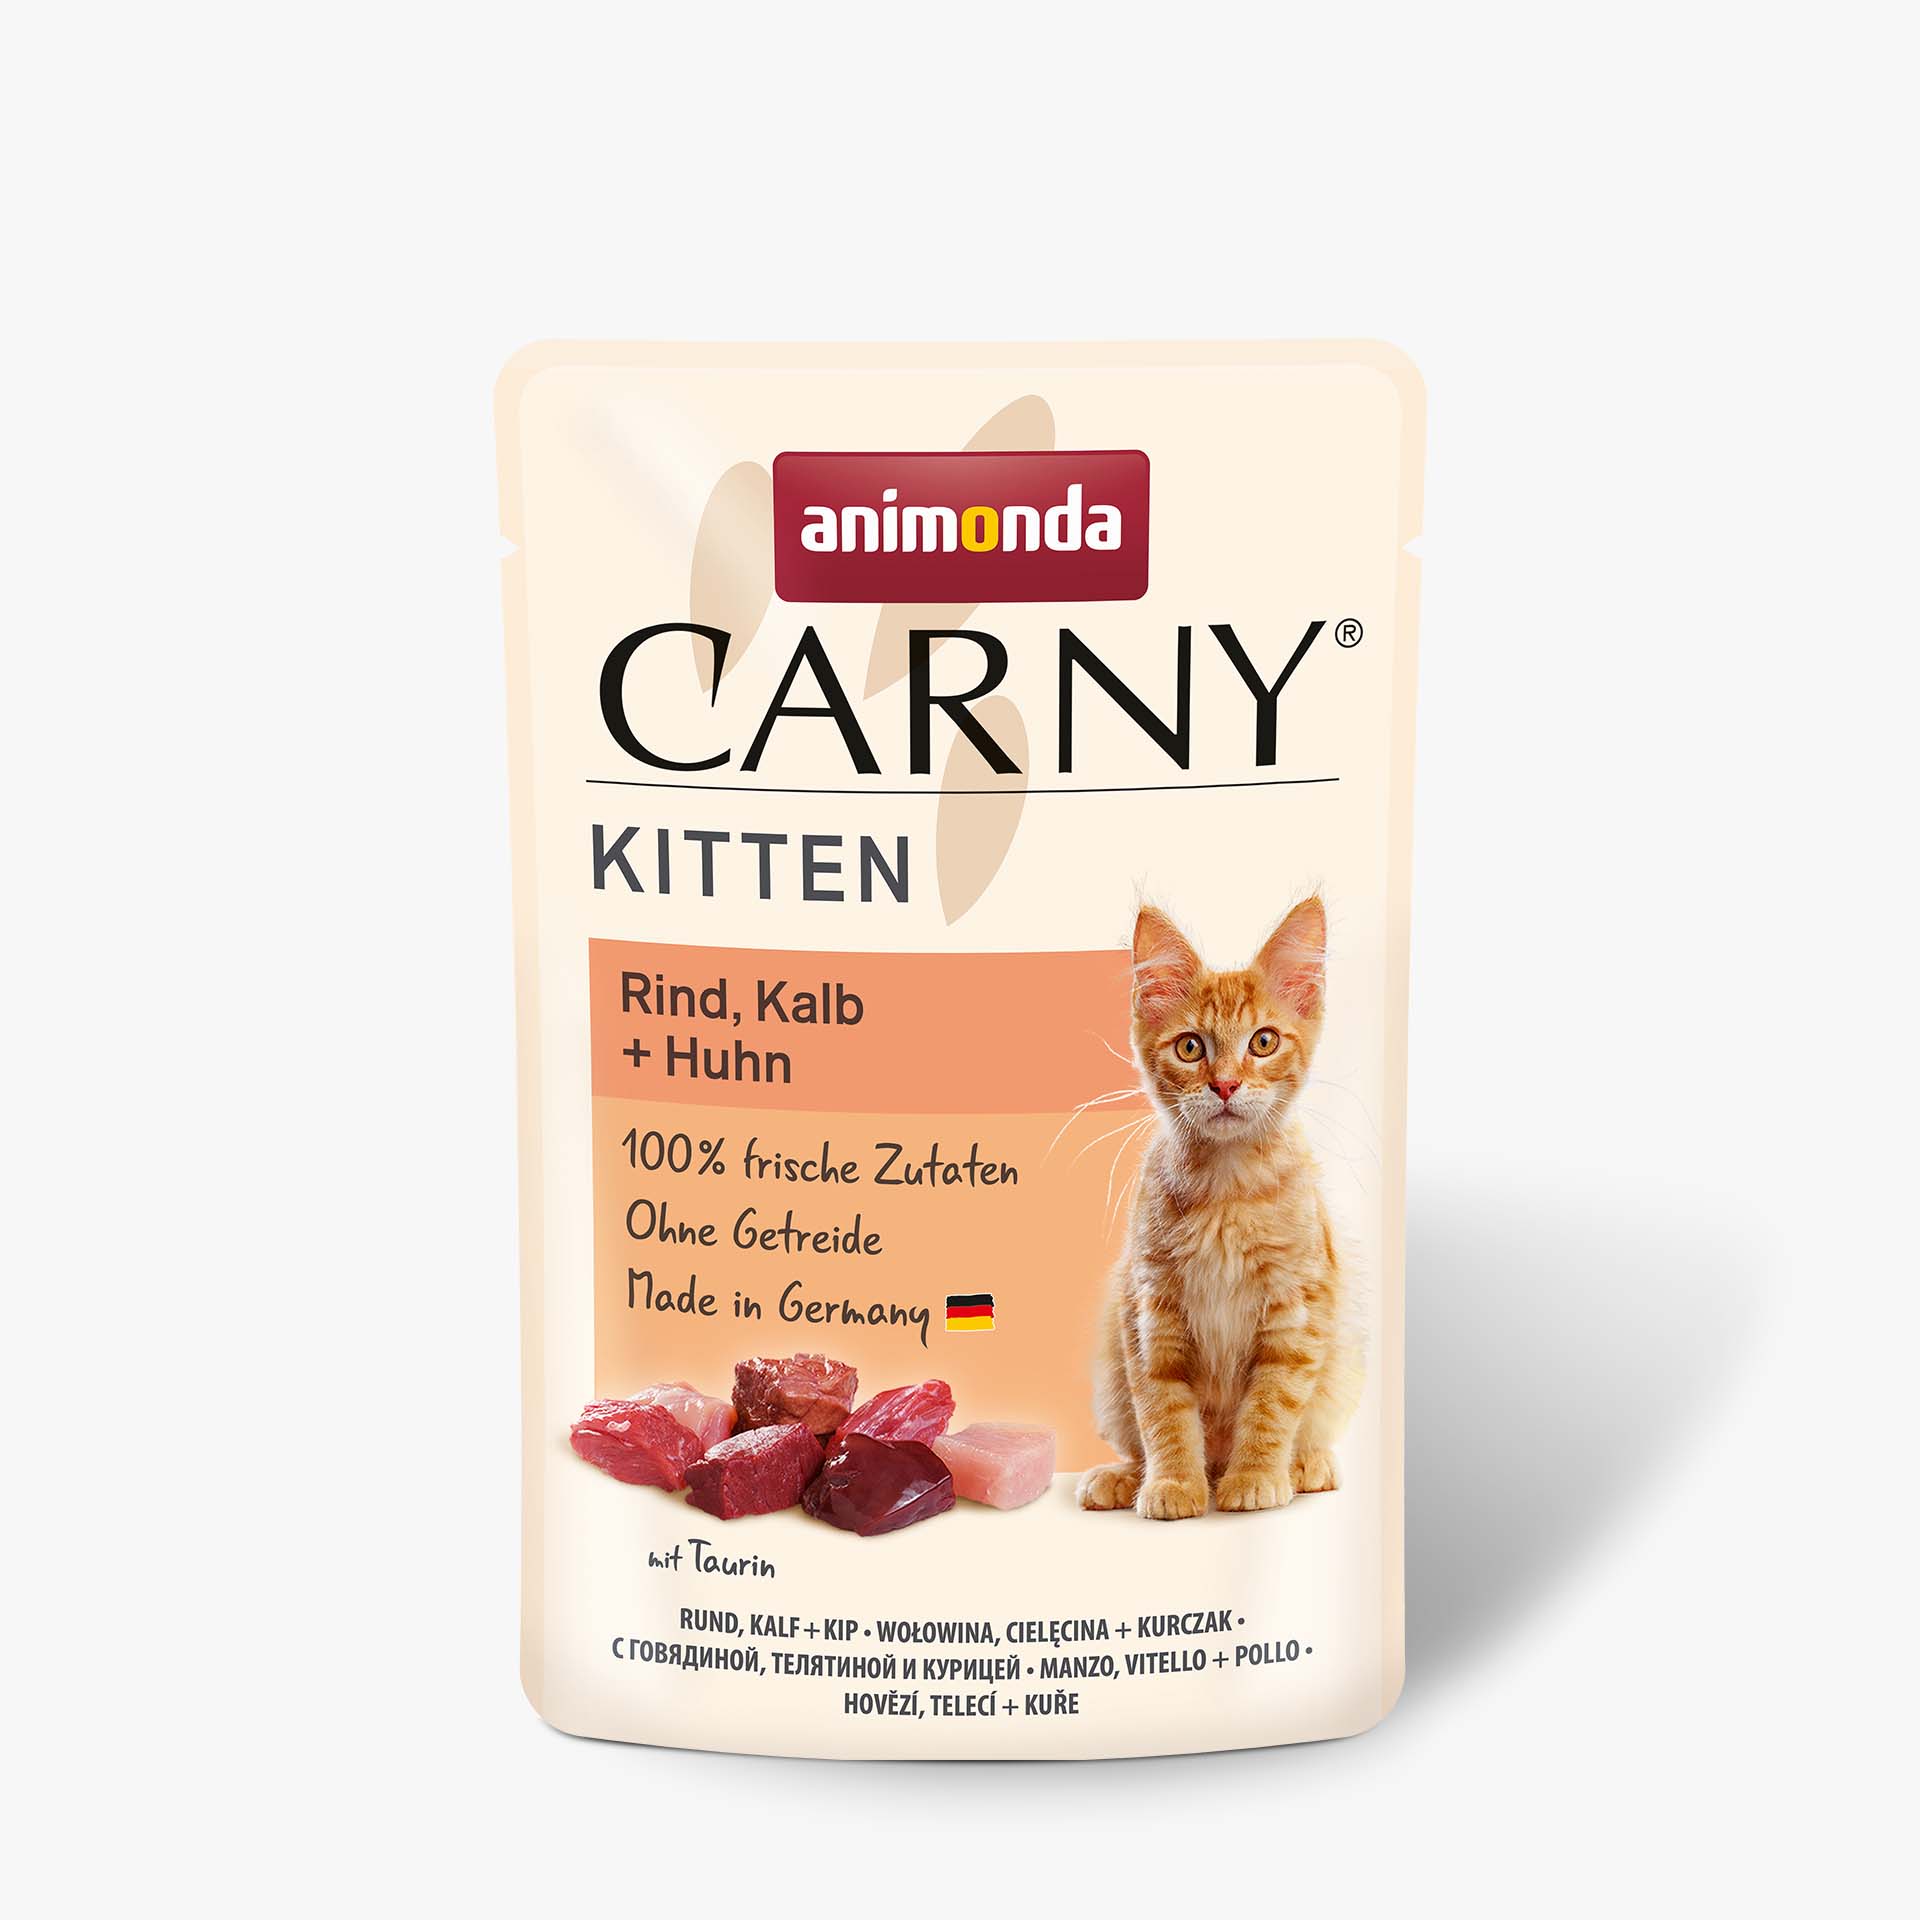 Carny  Kitten Rind, Kalb + Huhn